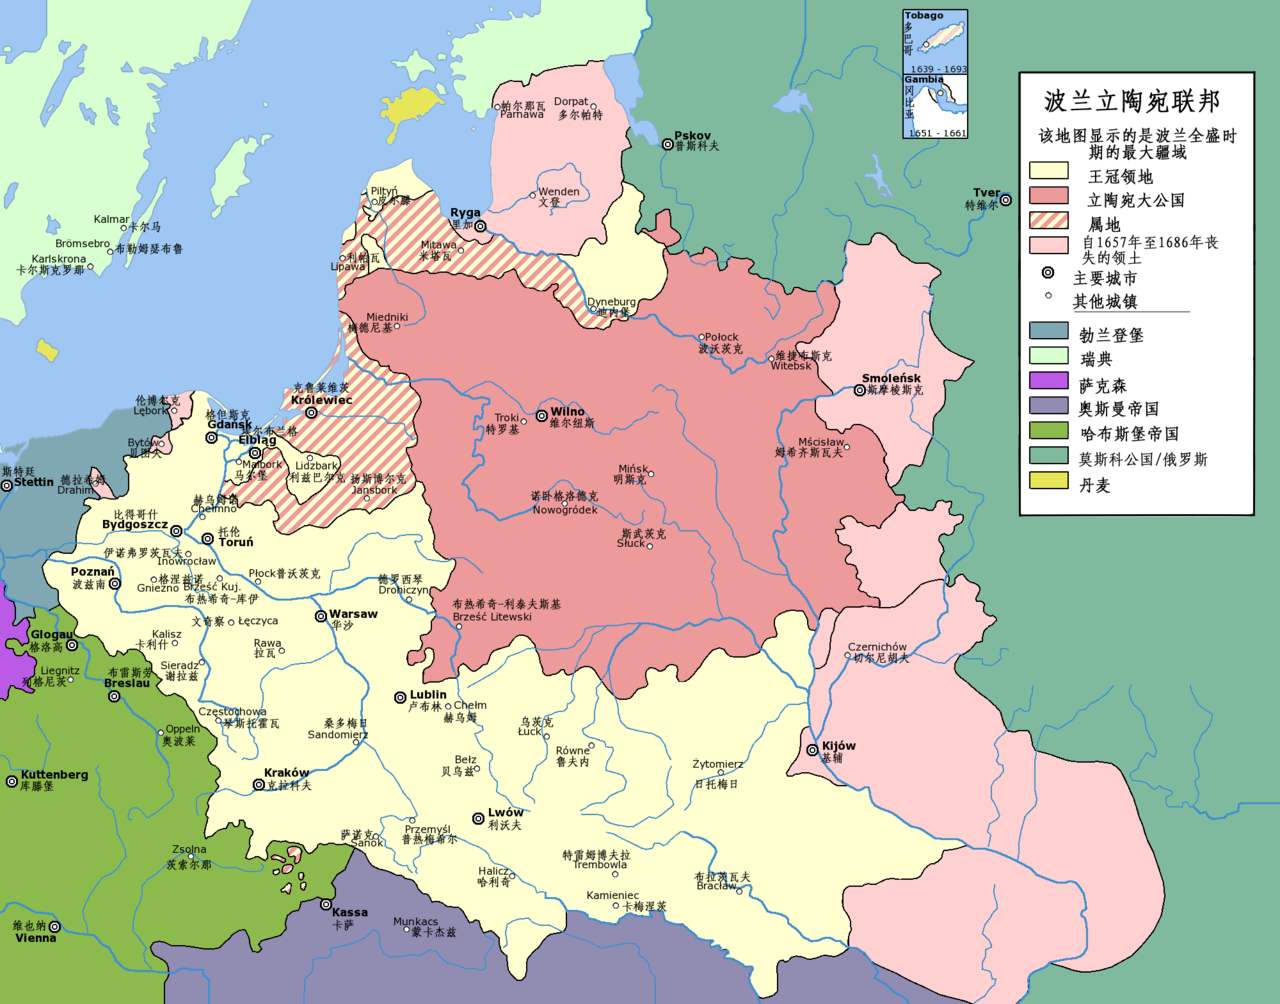 原创处四战之地的波兰,历史上四次被邻国瓜分